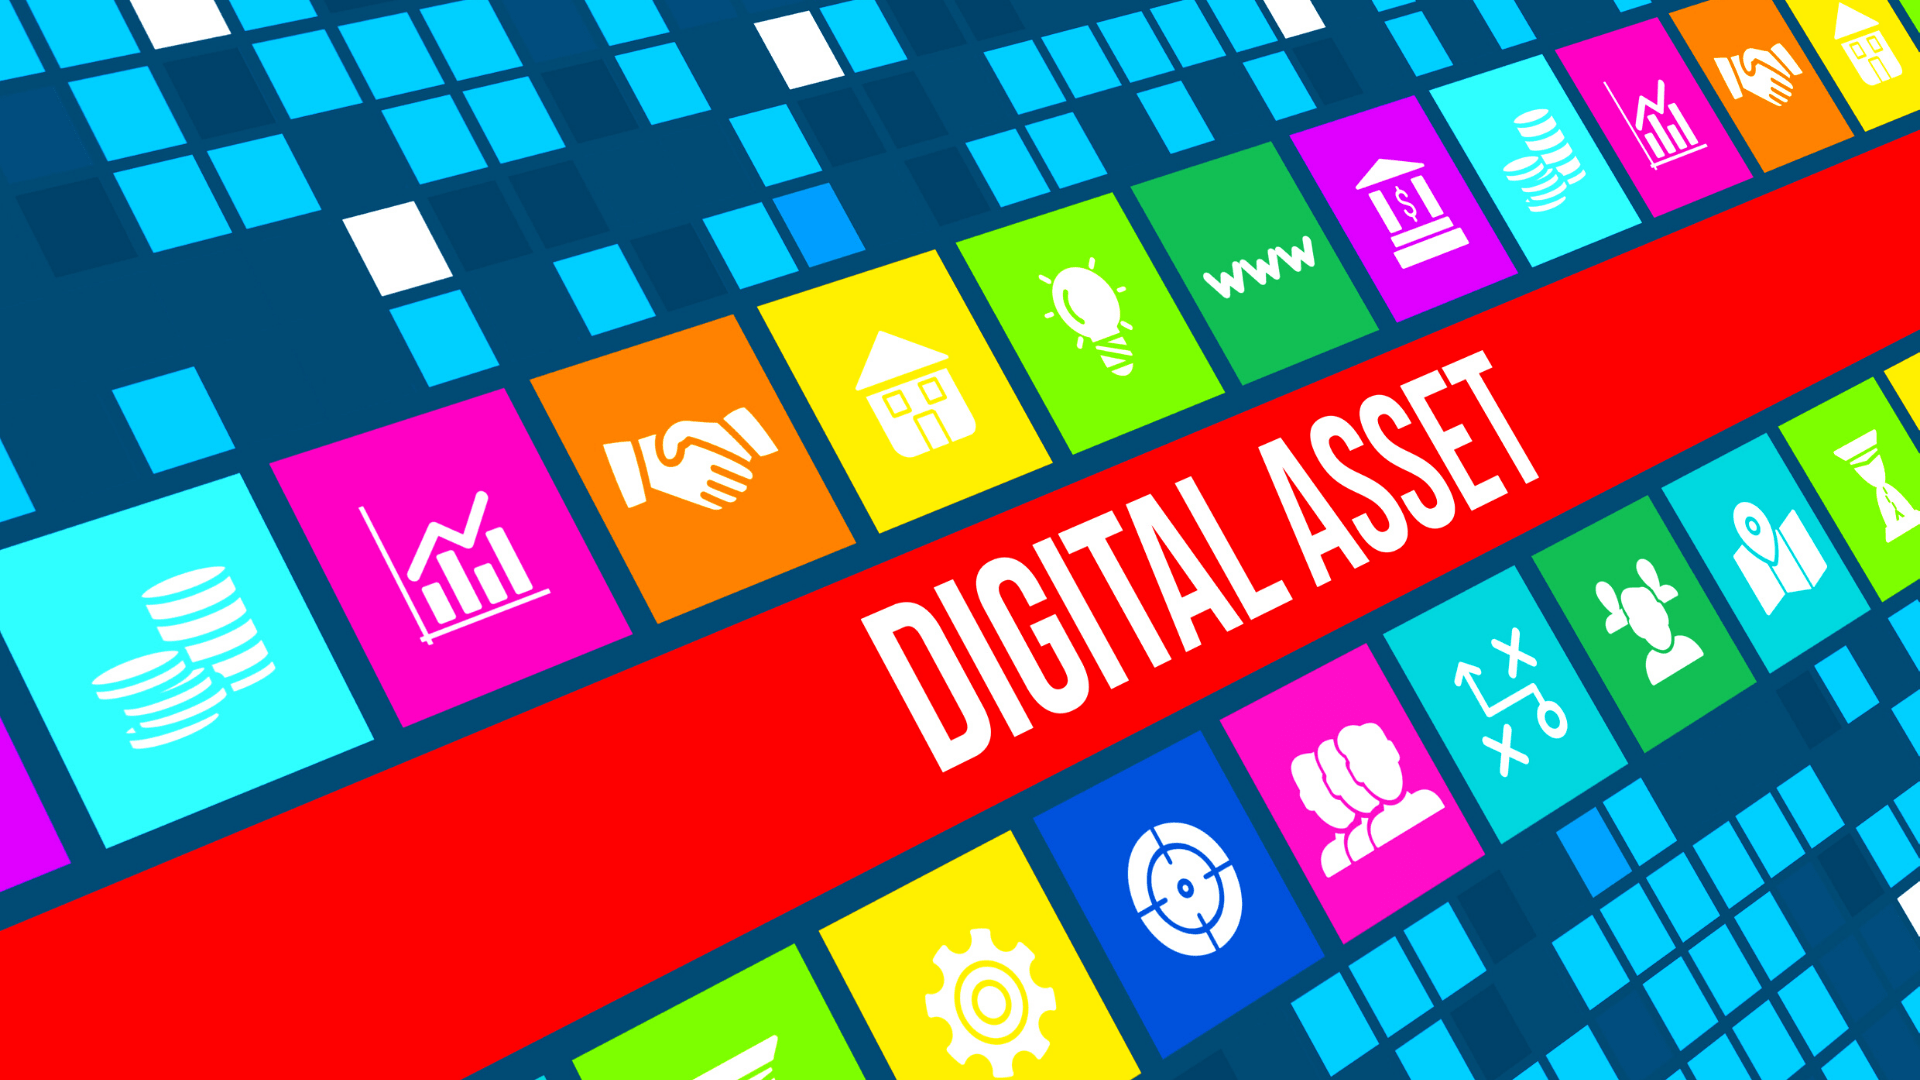 digital assets